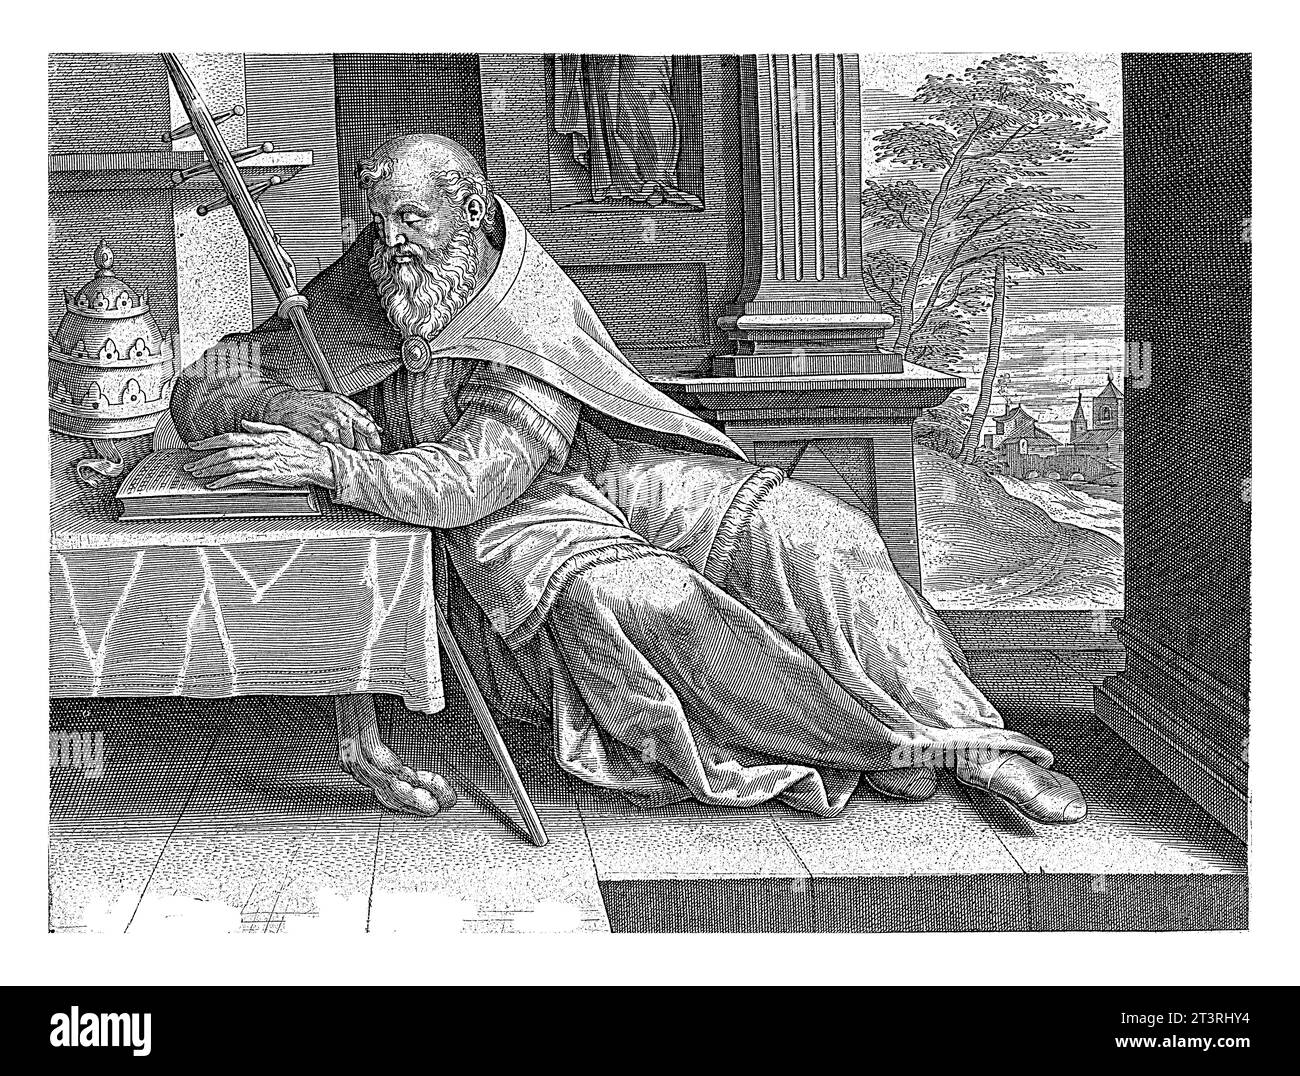 Der Heilige Gregor der große liest ein Buch. Auf dem Tisch stehen päpstliche Tiaras. Am Rand eine Beschriftung in lateinischer Sprache. Stockfoto